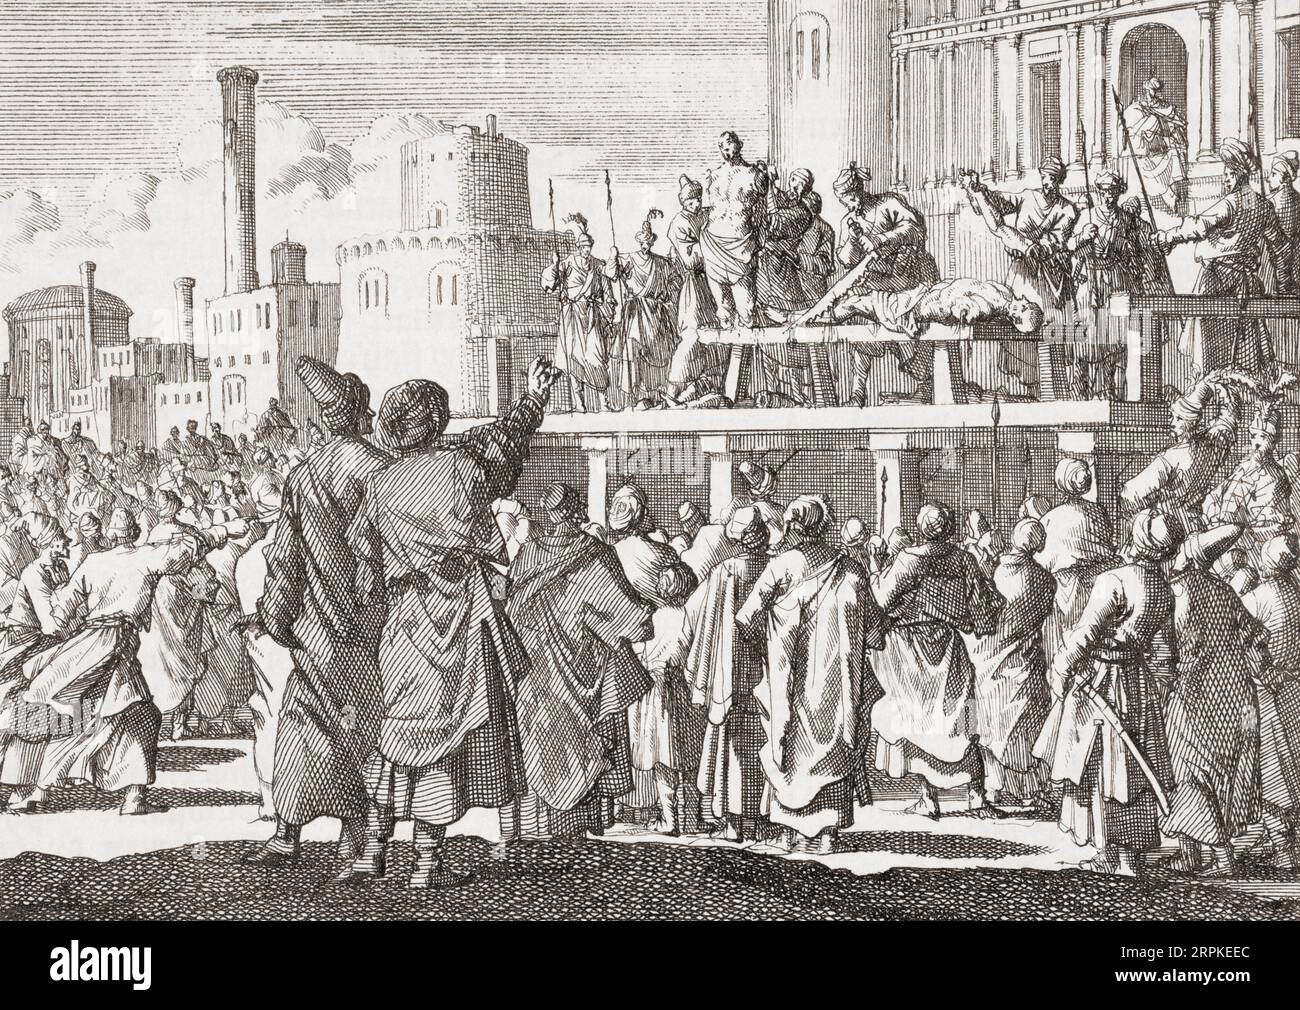 Zwei Männer werden brutal hingerichtet, weil sie geraucht haben, indem sie ihre Gliedmaßen amputiert haben. Murad IV., Sultan des Osmanischen Reiches, hatte den Gebrauch von Tabak, Alkohol und Kaffee verboten. Murad IV, 1612 - 1640. Nach einem Druck von Jan Luyken. Stockfoto